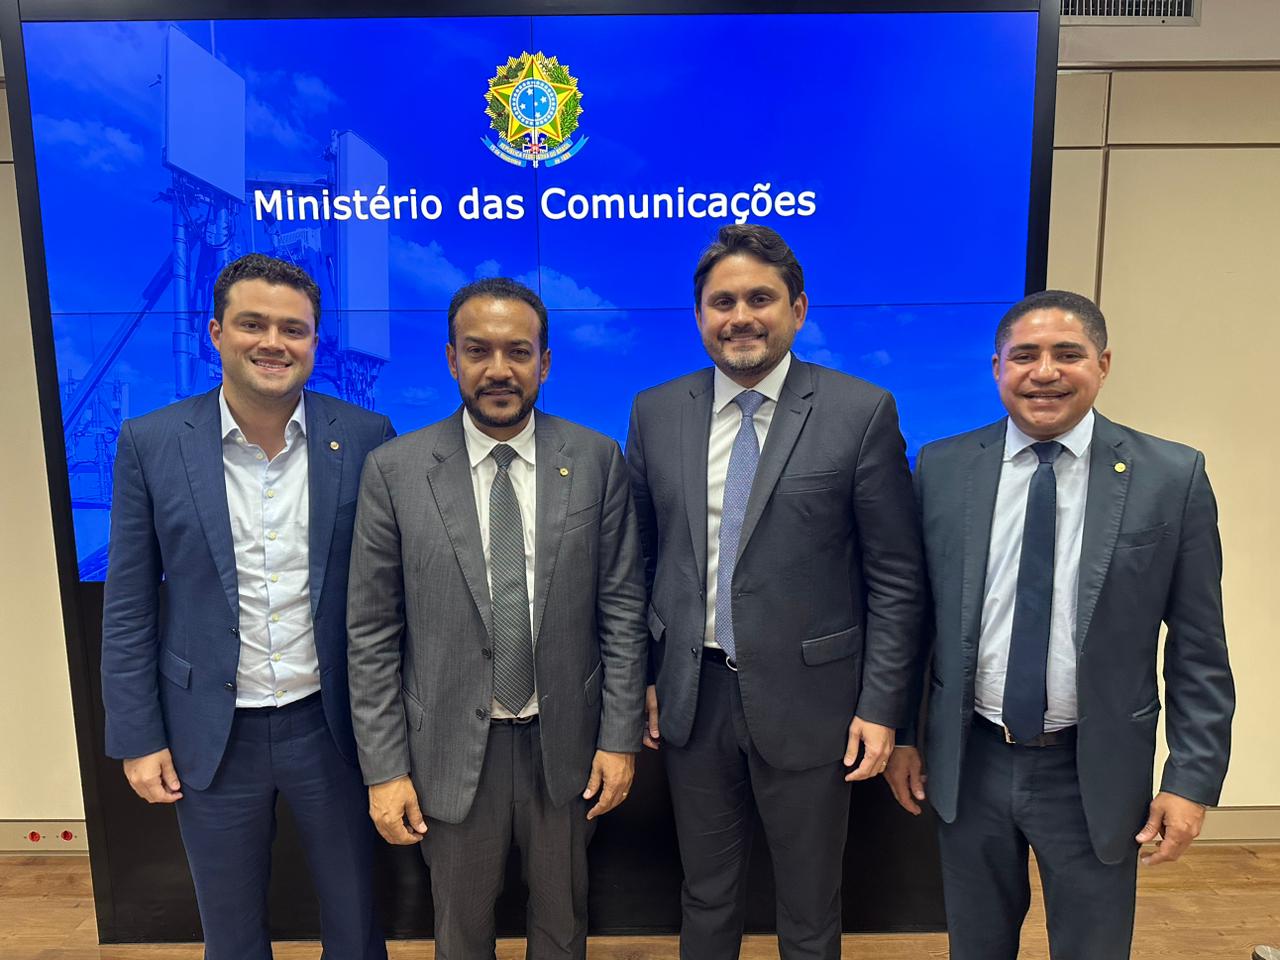 Parlamentares Leandro Bello, Júnior Cascaria e Zé Inácio com o ministro Juscelino Filho, no Ministério das Comunicações